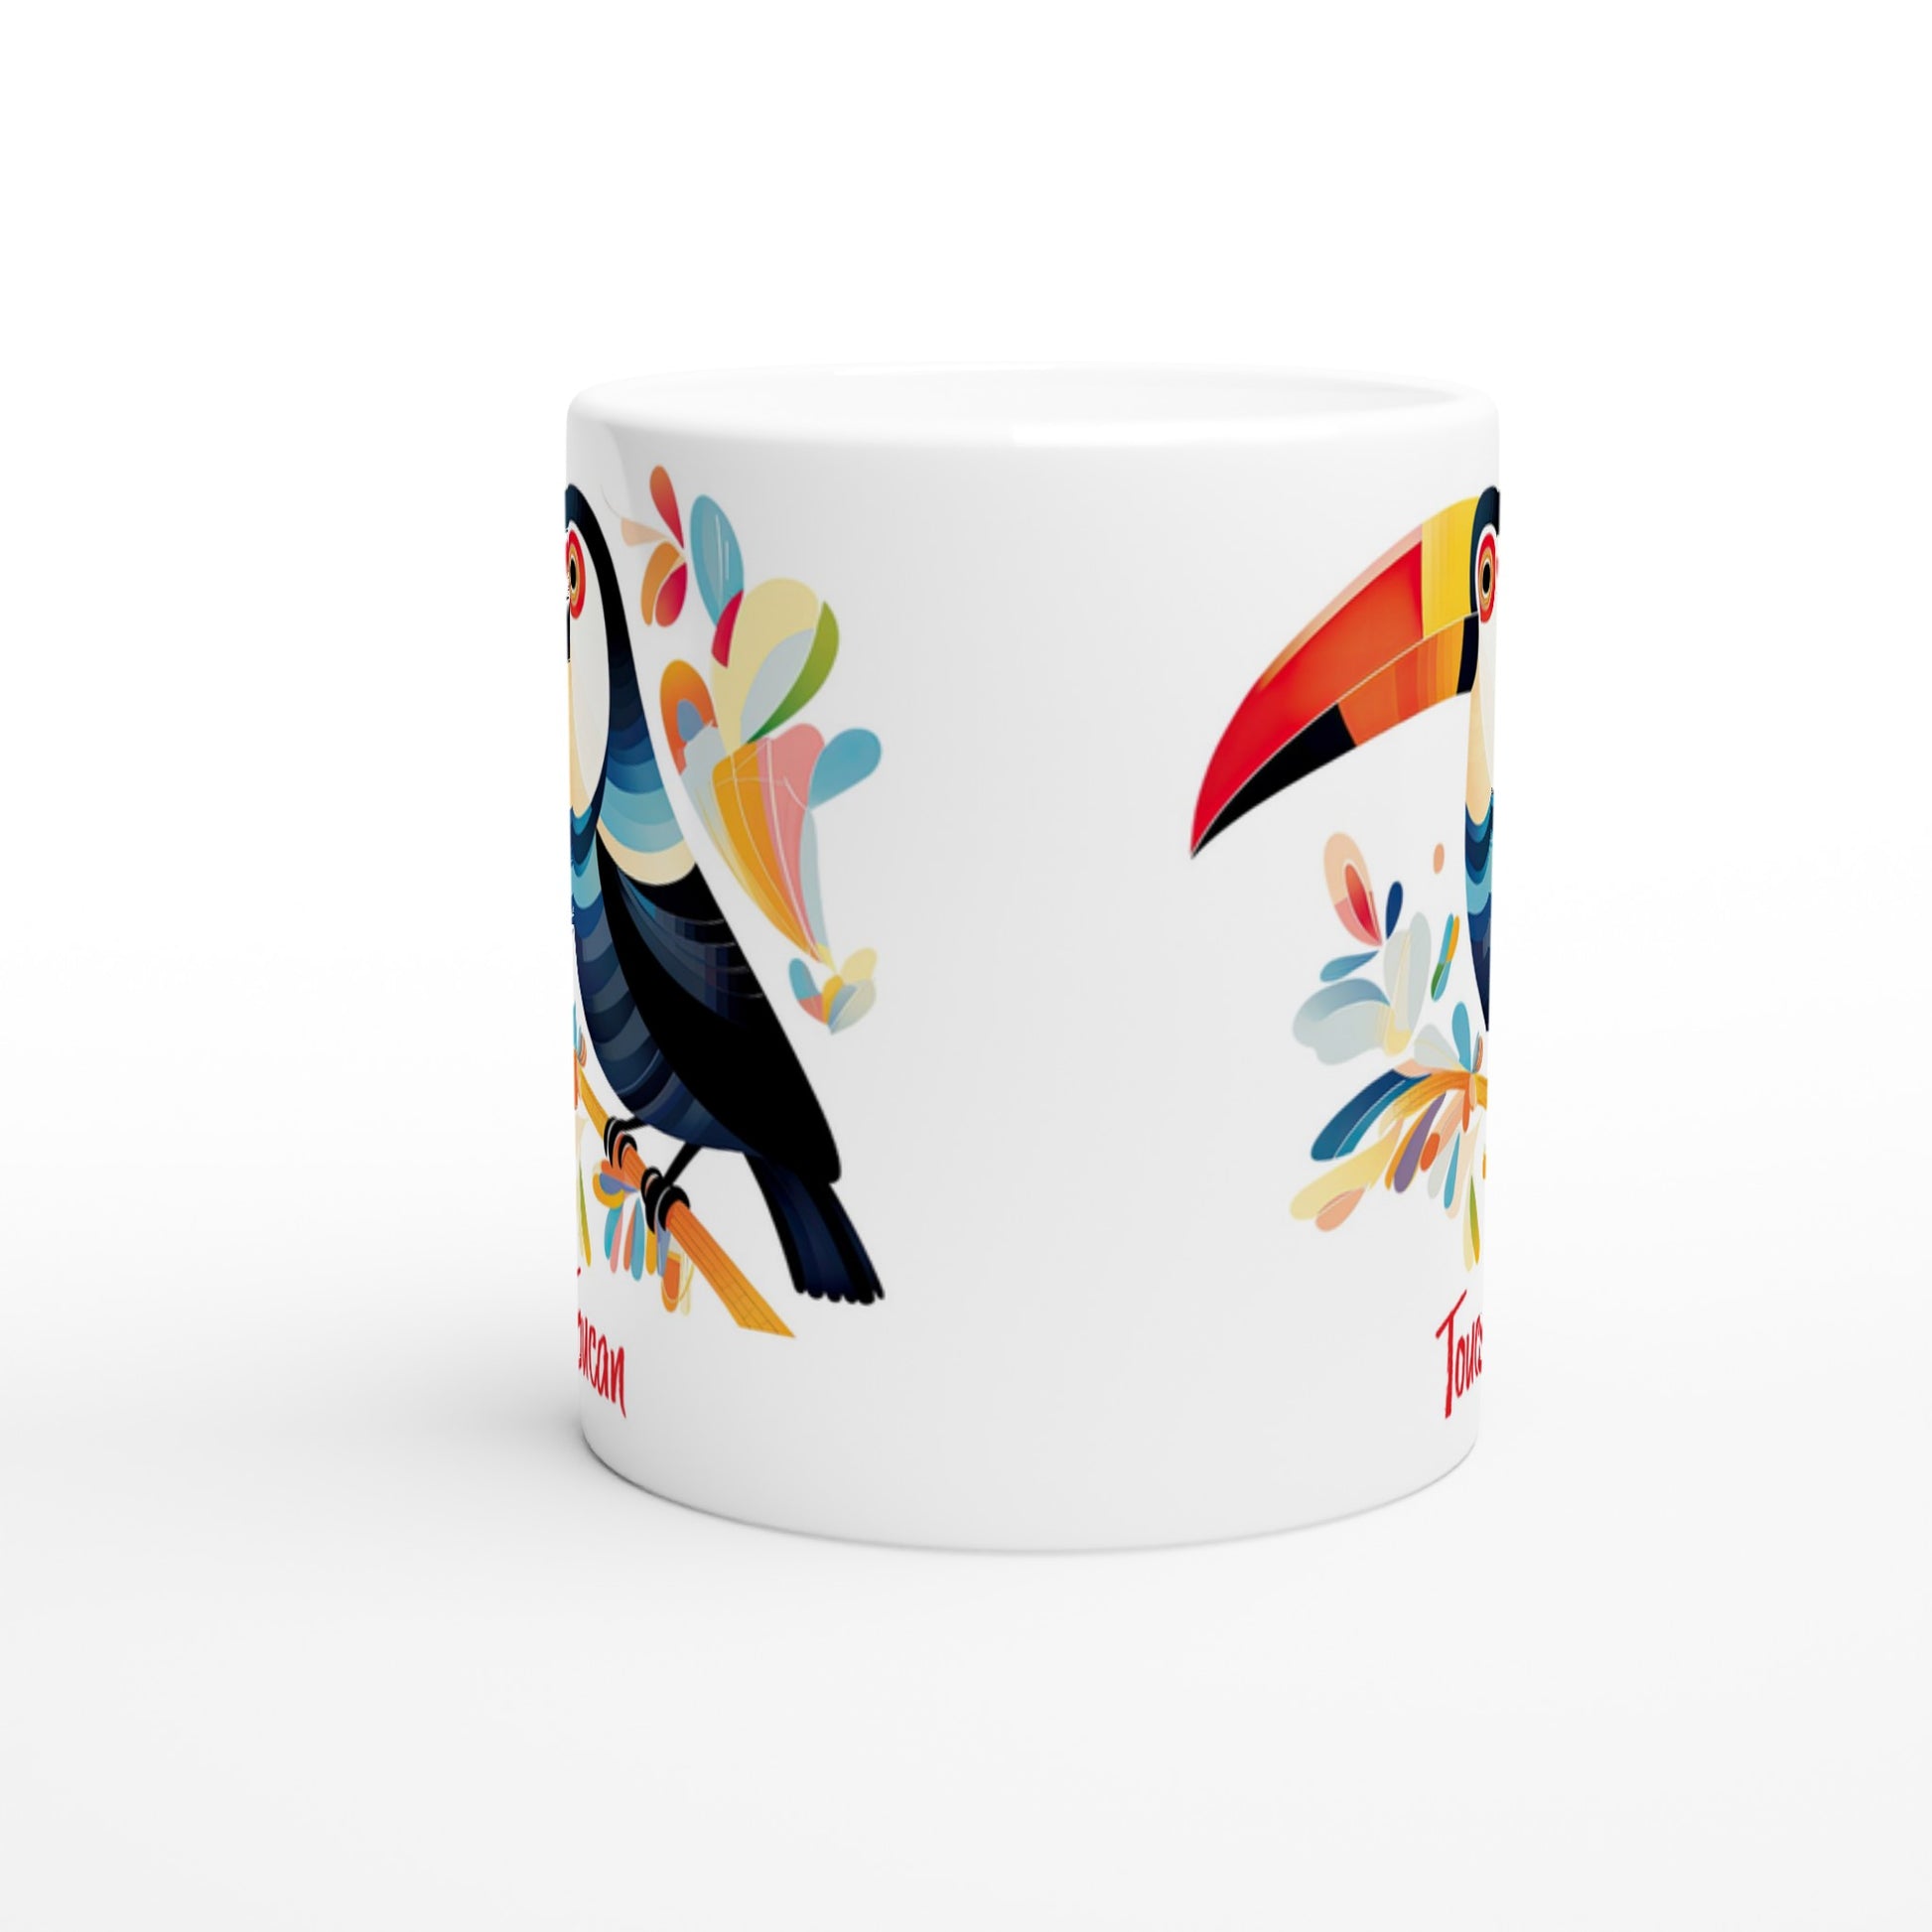 11oz Toucan print coffee mug